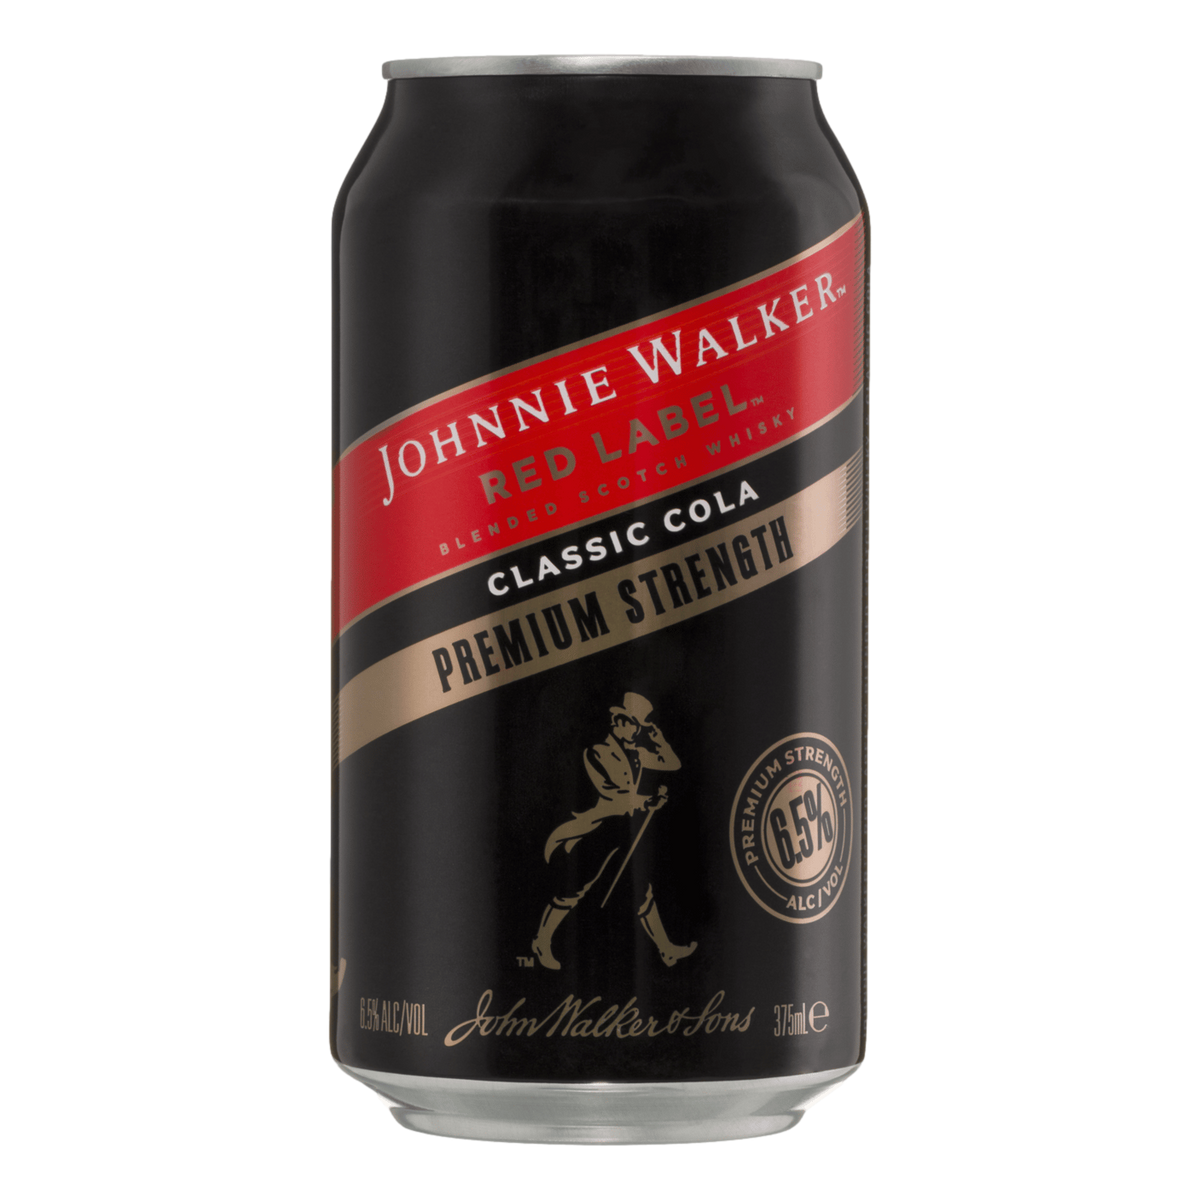 Johnnie Walker Premium & Cola 6.5% 375ml Can Case of 24